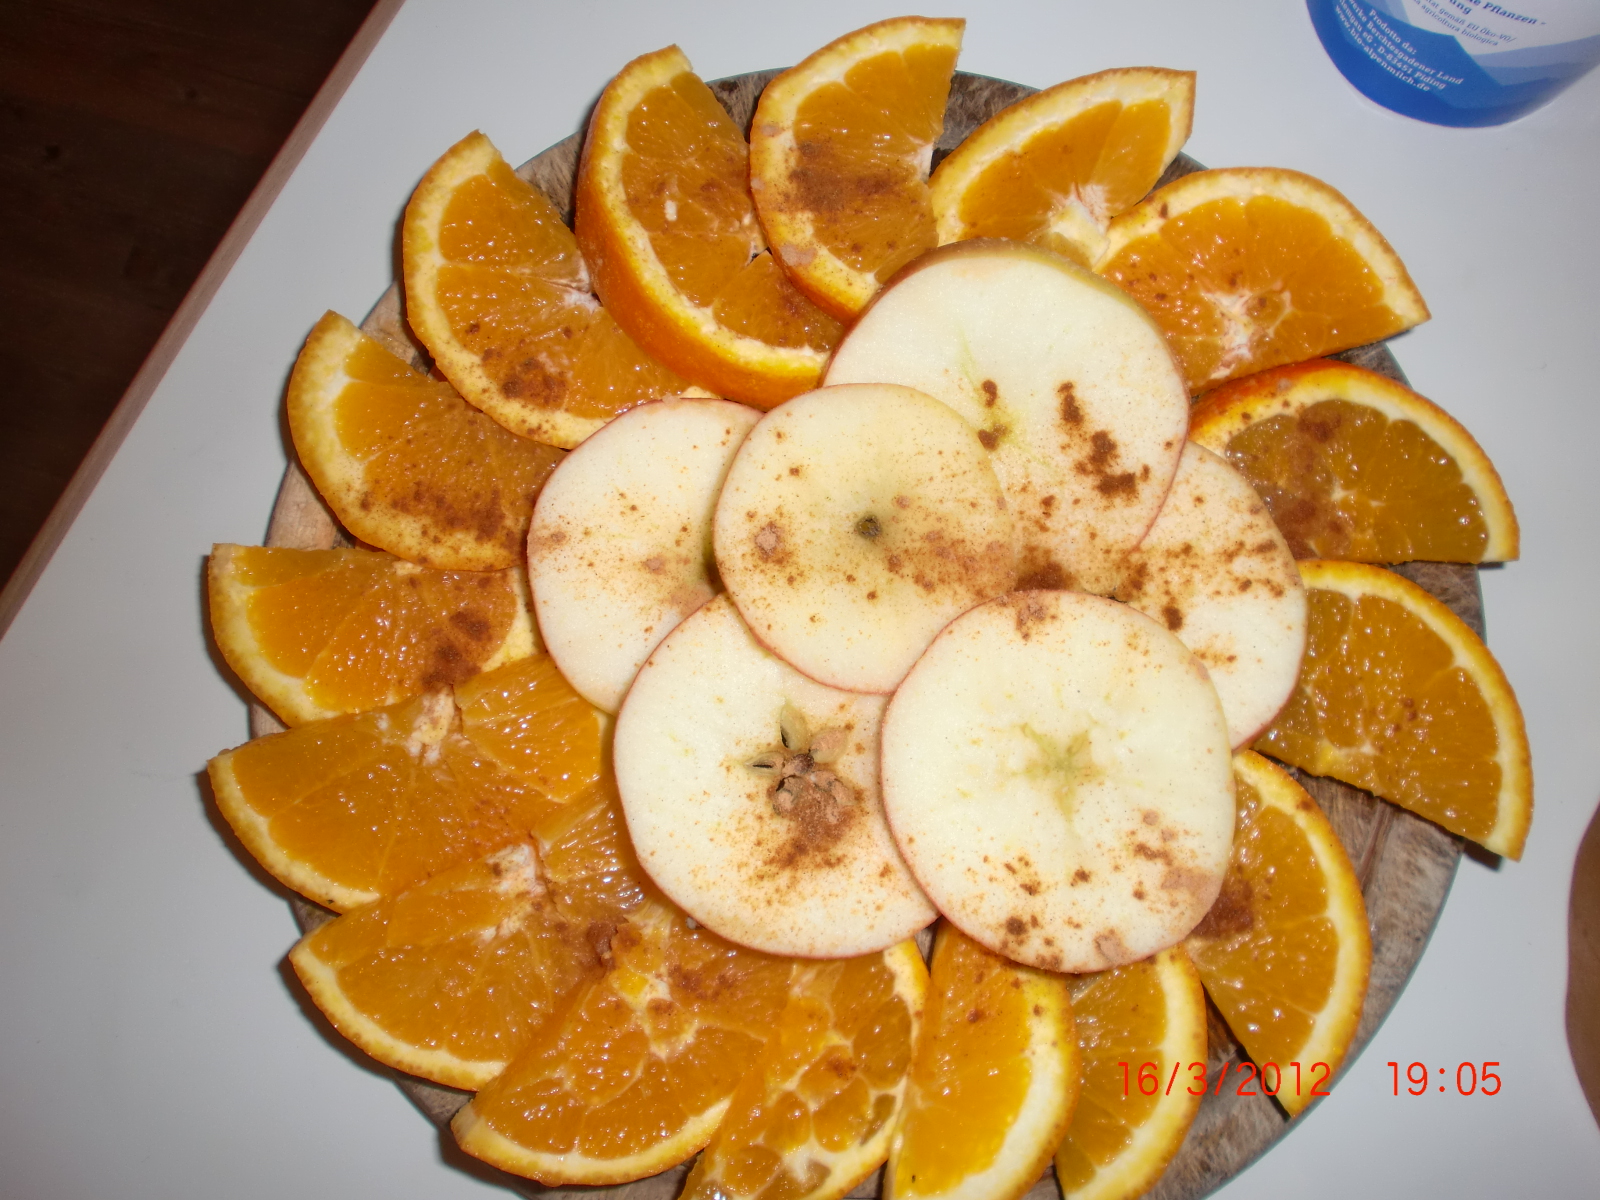 Orangen- und Apfelscheiben visuell ansprechbar serviert